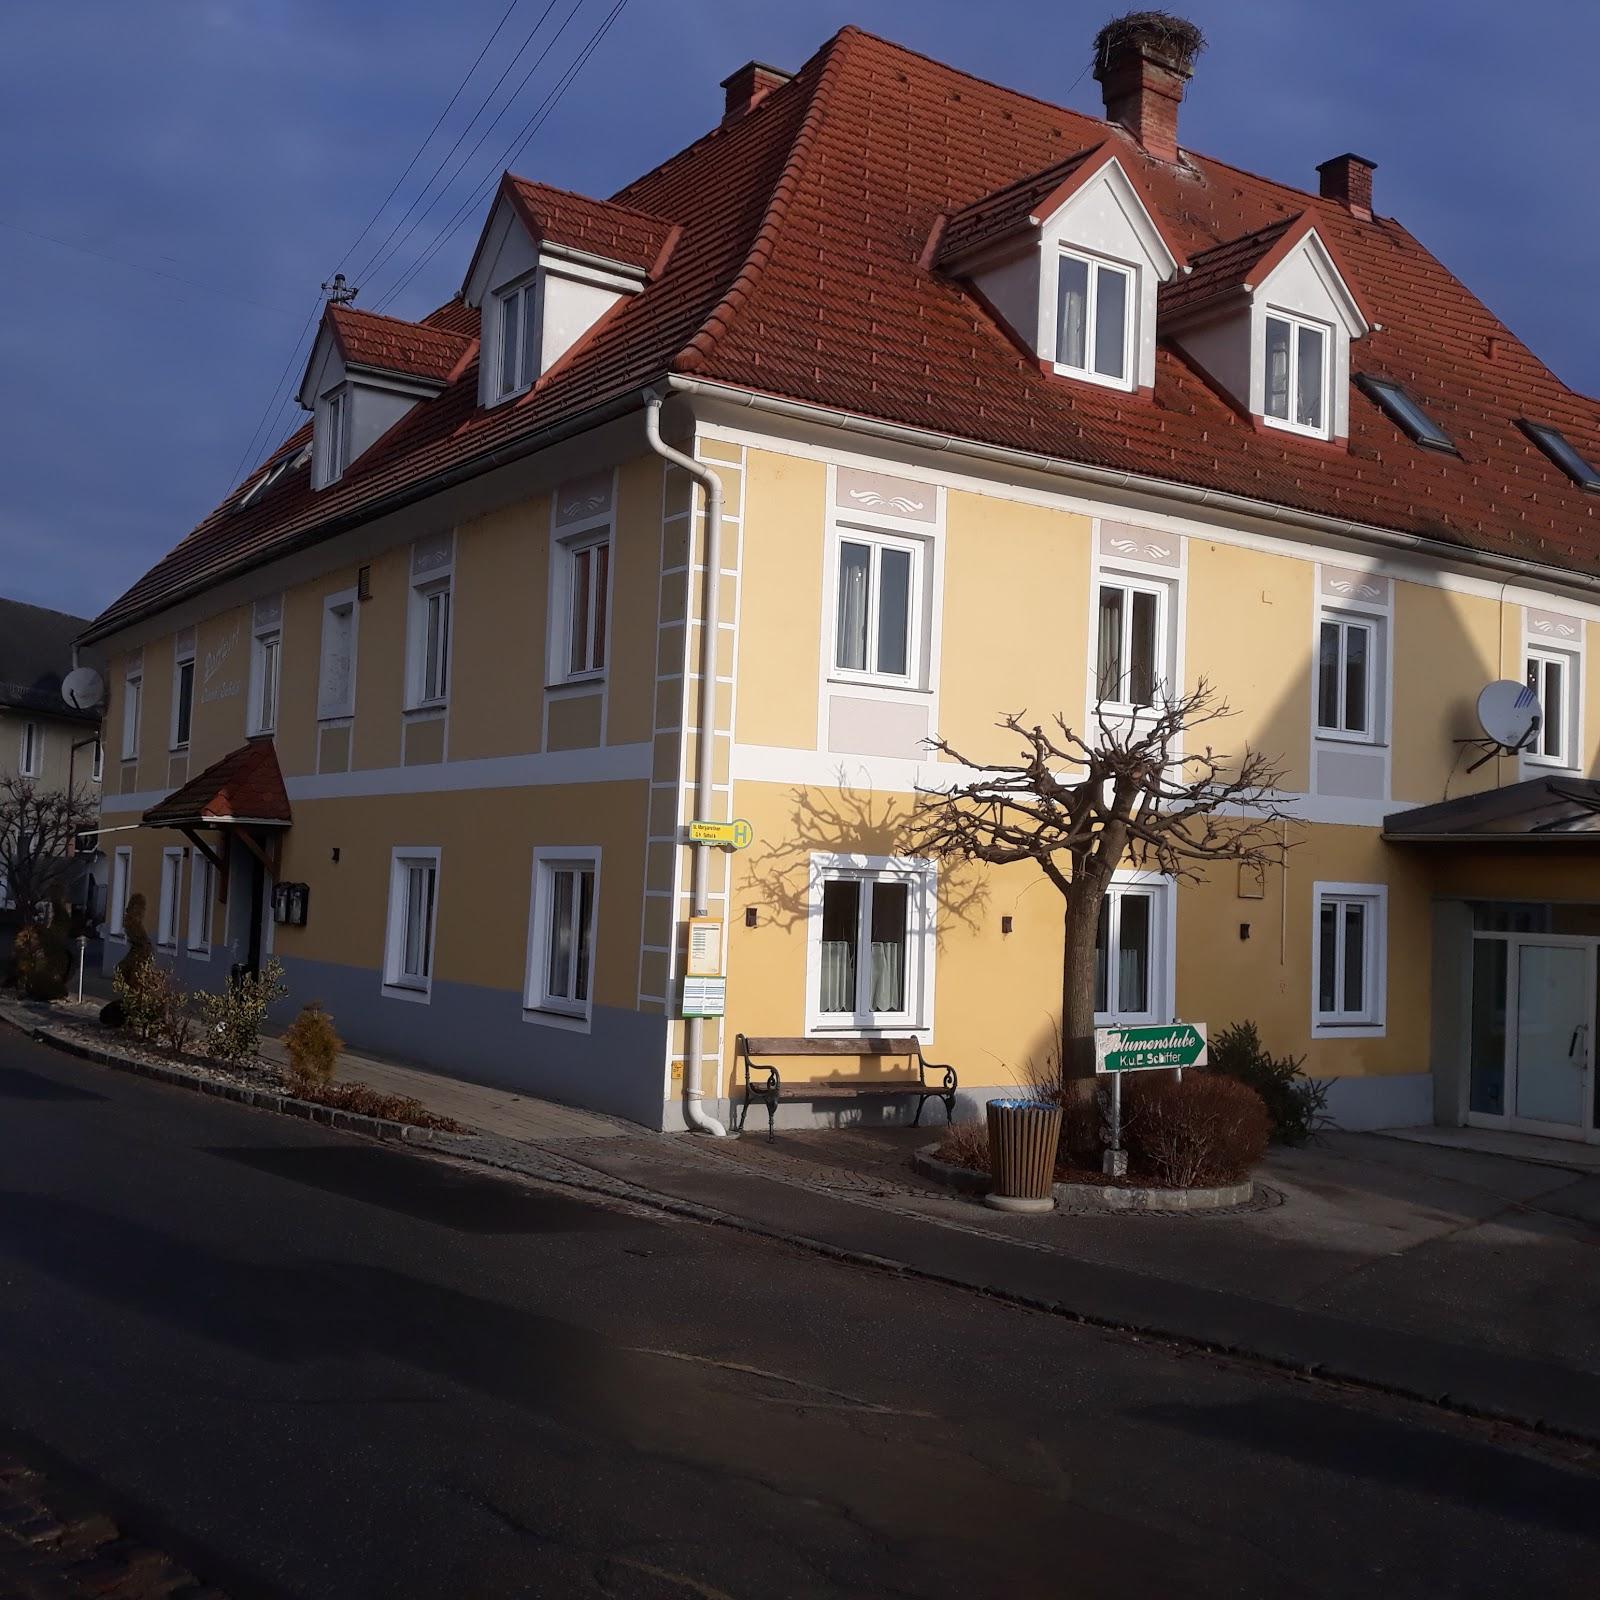 Restaurant "Gasthaus Rauch-Schalk" in Sankt Margarethen an der Raab